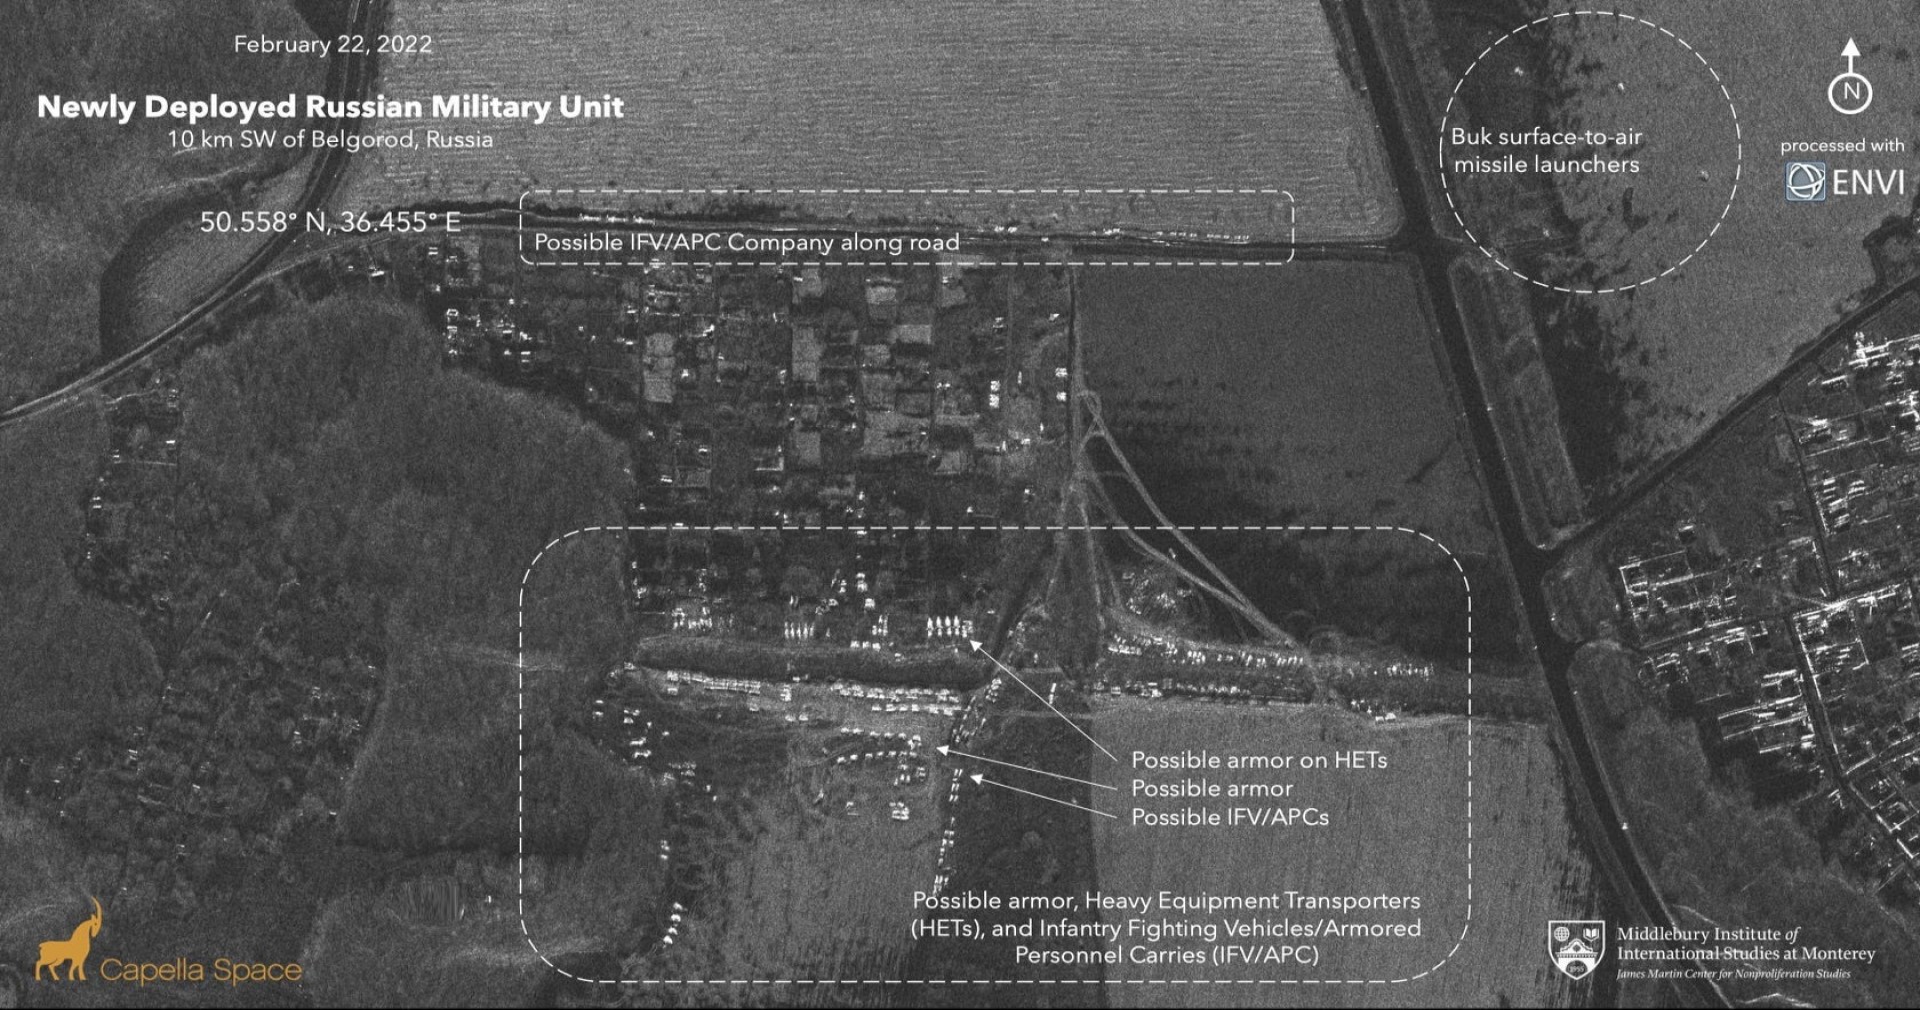 ผู้เชี่ยวชาญจากแคลิฟอร์เนียพบการเคลื่อนพลของกองทัพรัสเซียบน Google Maps ก่อนการบุกยูเครน